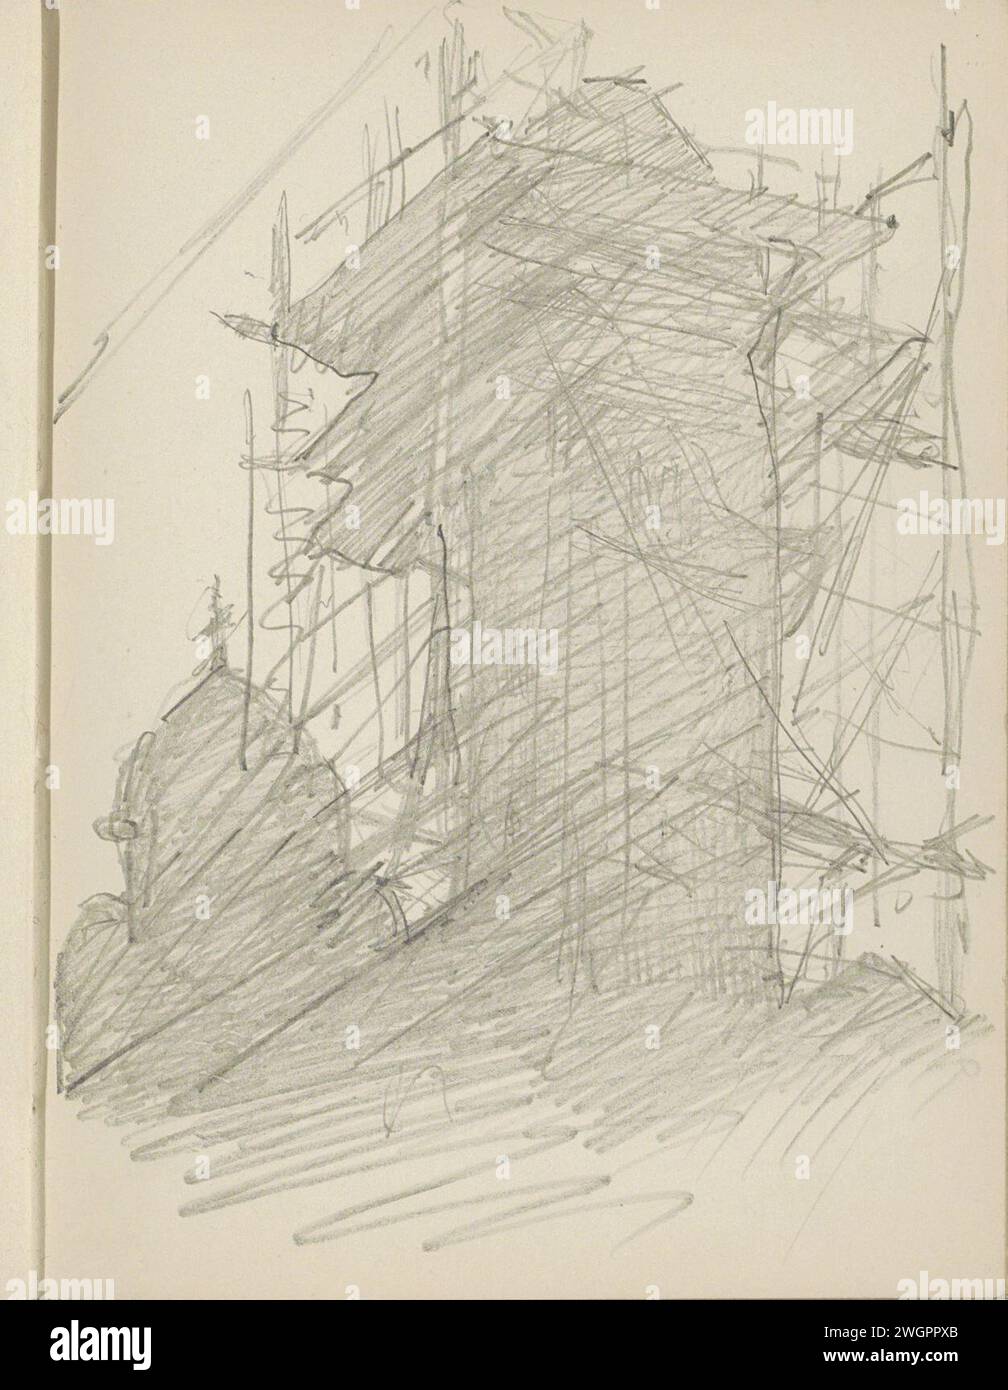 Turm im Gerüst, 1906 - 1945 Seite 59 Recto aus einem Skizzenbuch mit 69 Blättern. Papier. Bleistiftturm (Haus oder Gebäude). Gerüst ( Bauarbeiten) Stockfoto